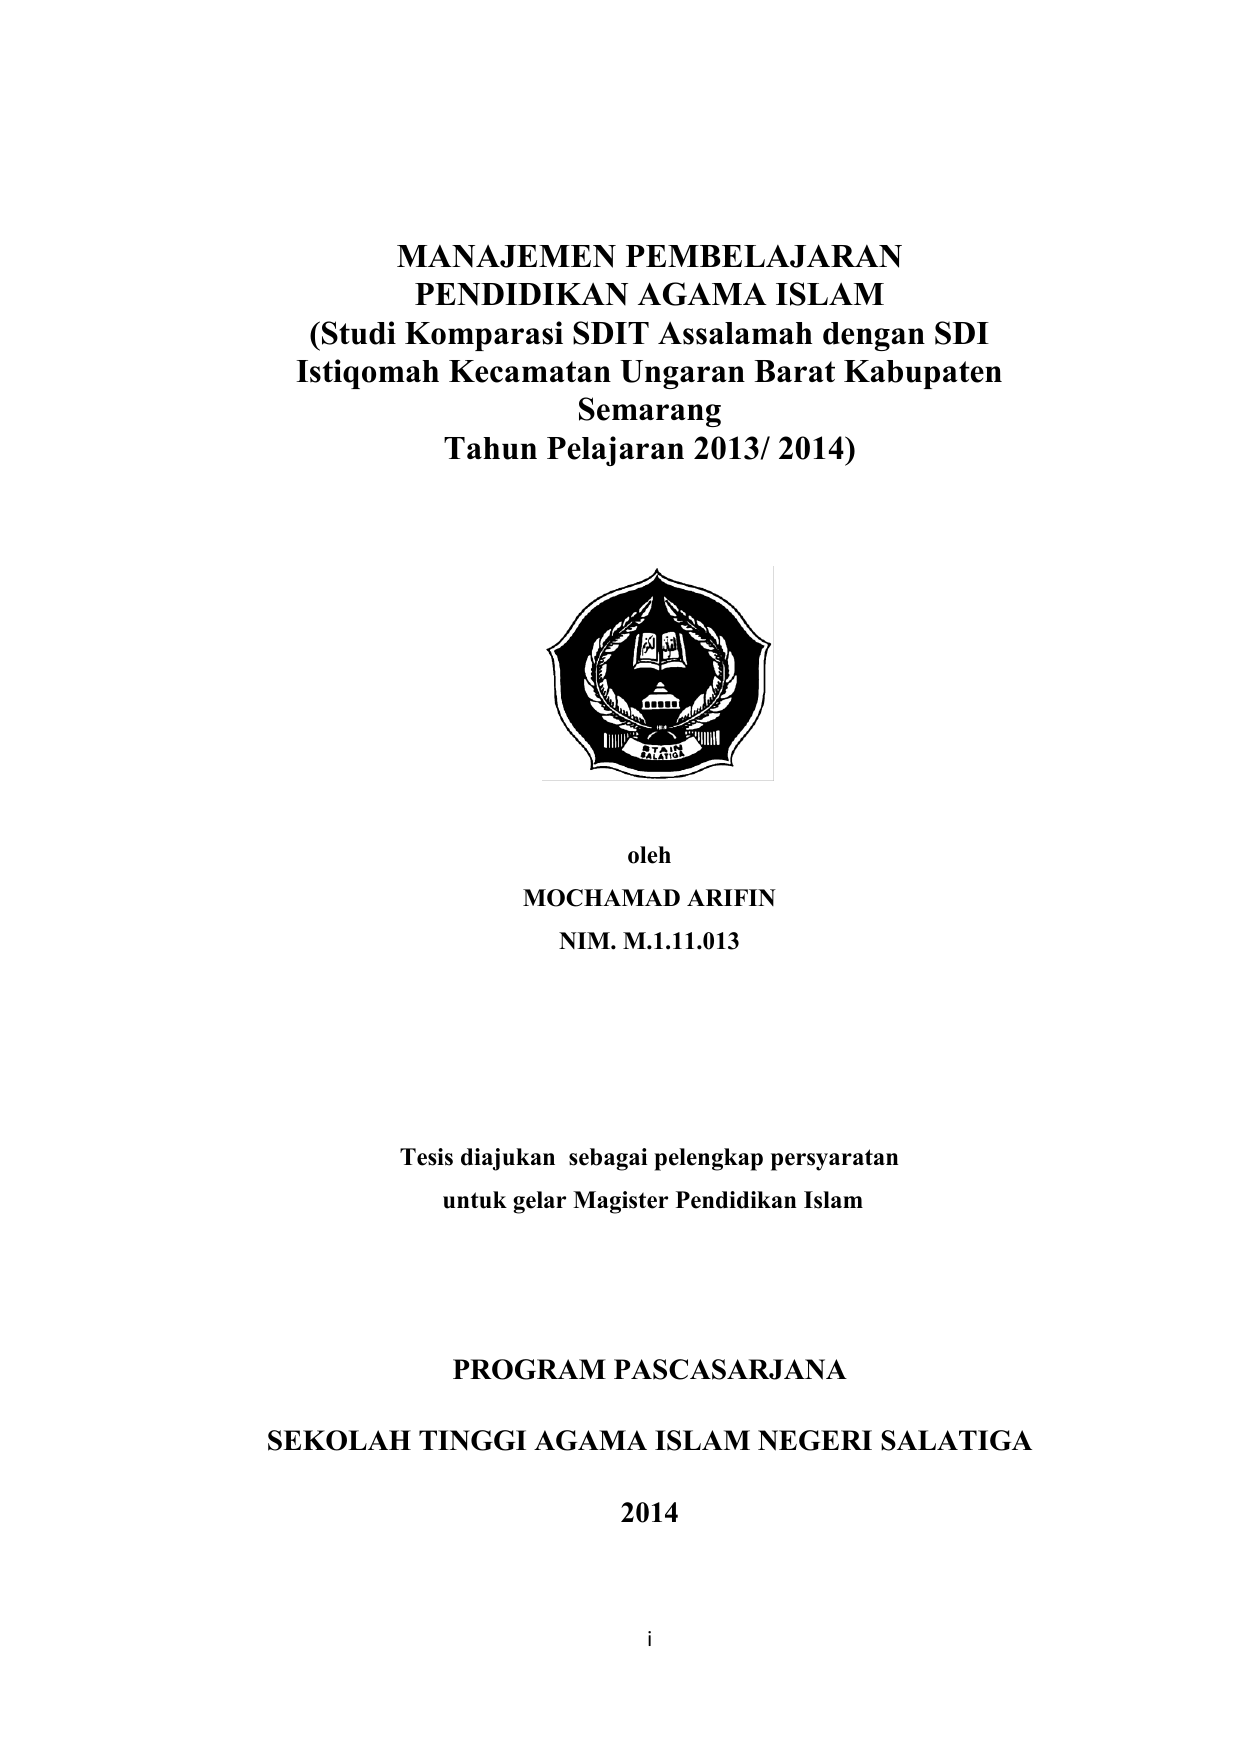 Studi Komparasi SDIT Assalamah dengan SDI Istiqomah Kecamatan Ungaran Barat Kabupaten Semarang Tahun Pelajaran 2013 2014 oleh MOCHAMAD ARIFIN NIM